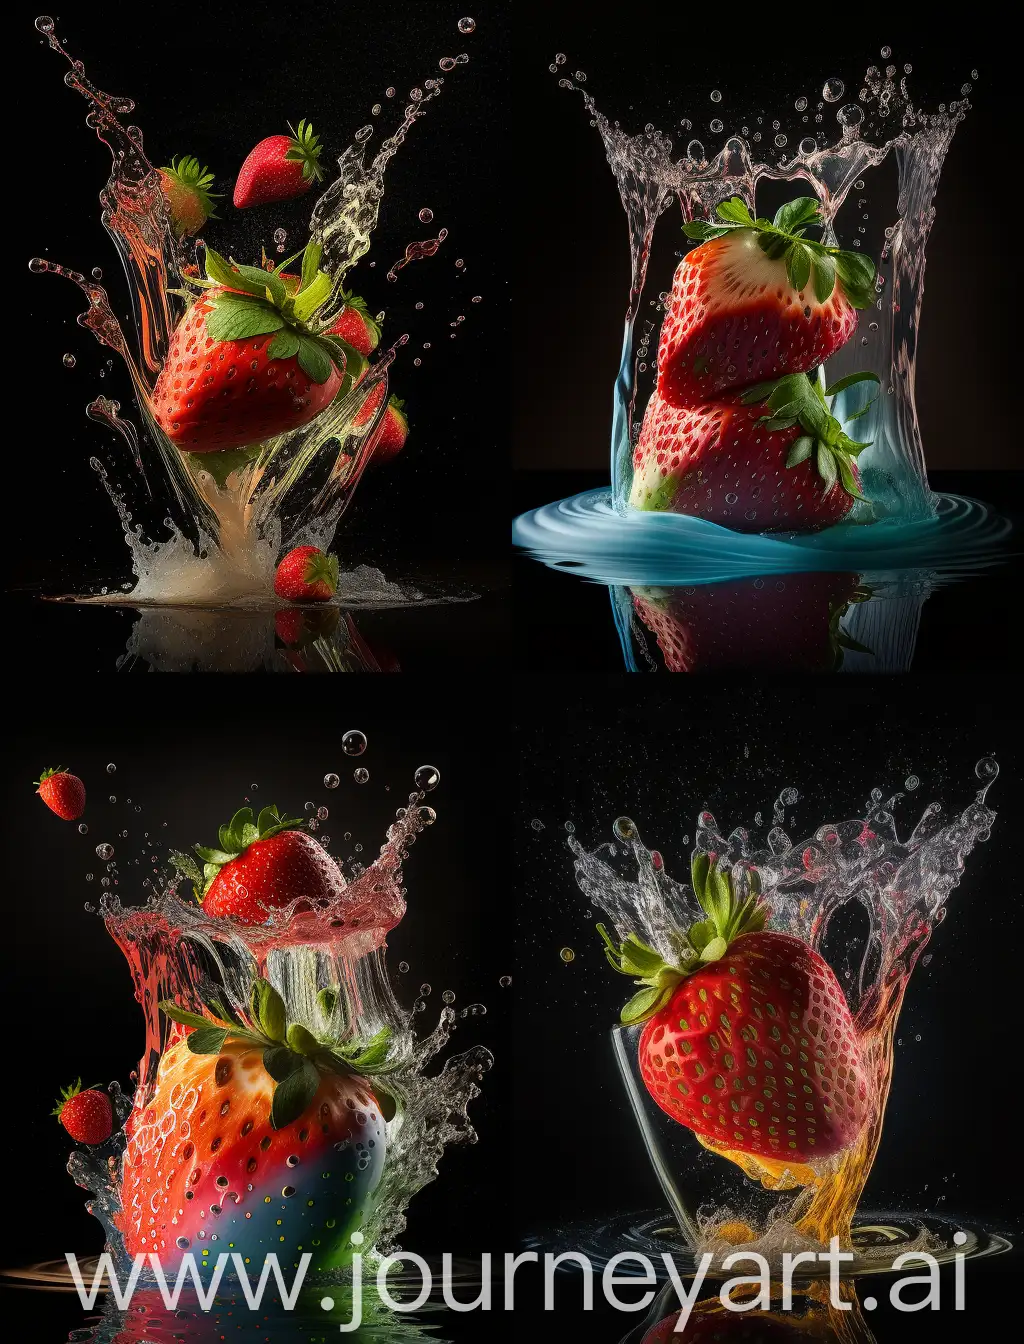 精致的草莓瀑布，食物拍摄，超广角，明亮的彩色背景，新鲜的蔬菜颜色，surre al风格，逼真，超精细的细节，景深，高分辦率，由佳能拍摄